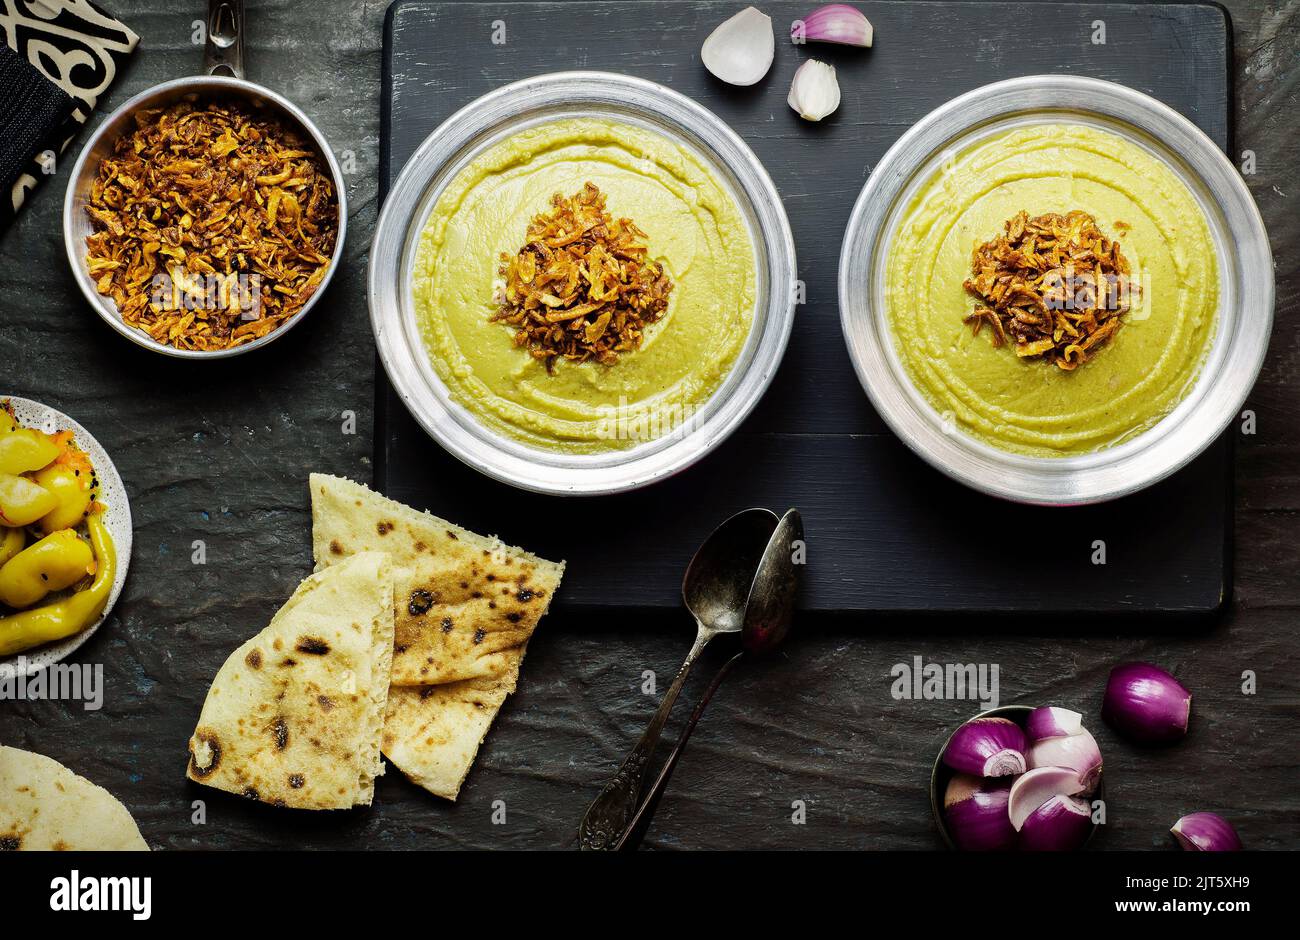 Cucina araba, fave egiziane e salsa alle erbe (Bessara). Contiene fave, cipolla, aglio ed erbe fresche. Foto Stock